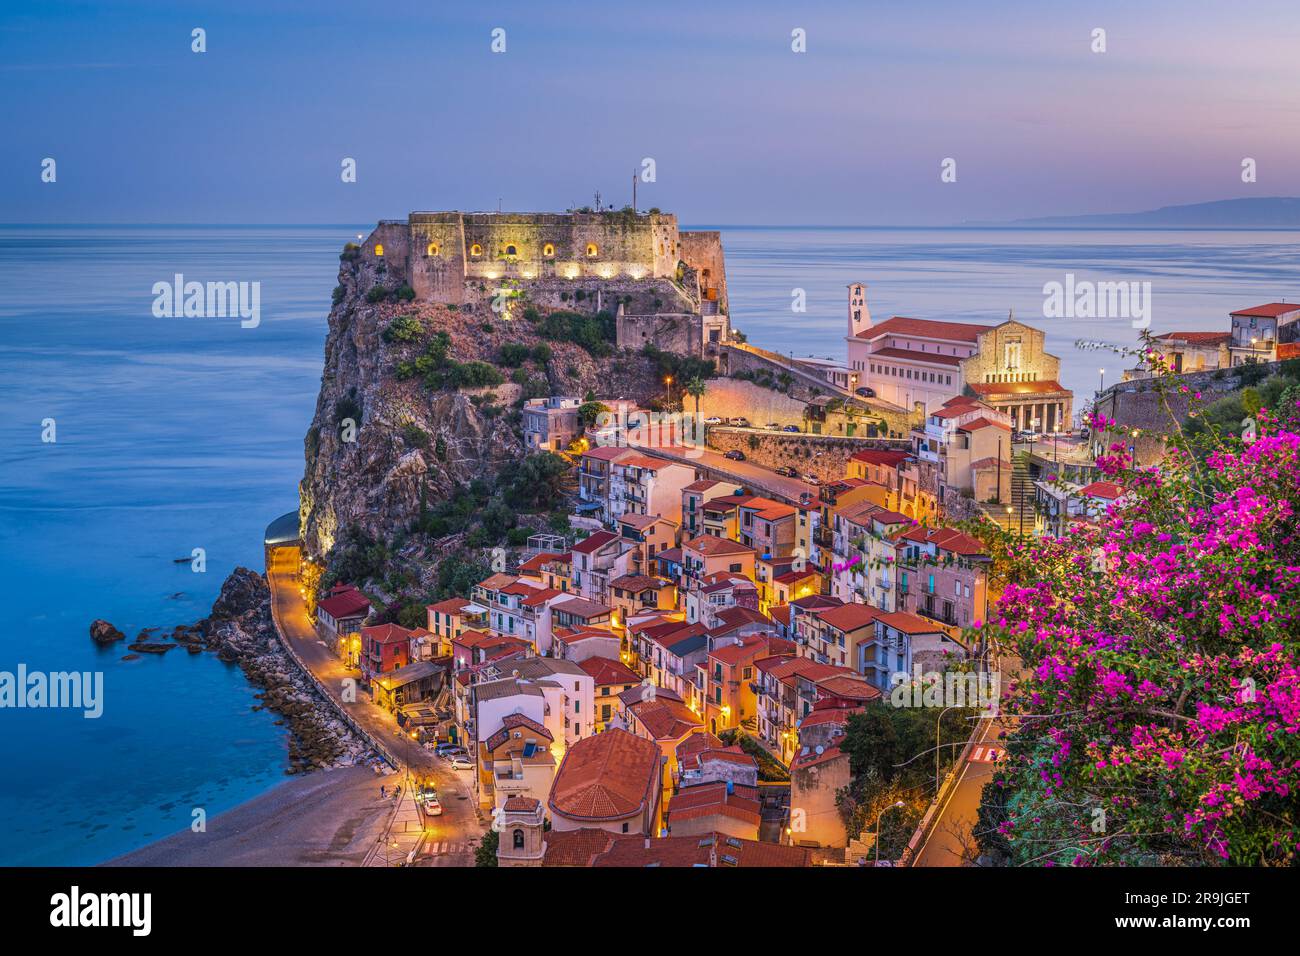 Scilla, Italie sur la côte méditerranéenne au crépuscule avec des fleurs saisonnières. Banque D'Images